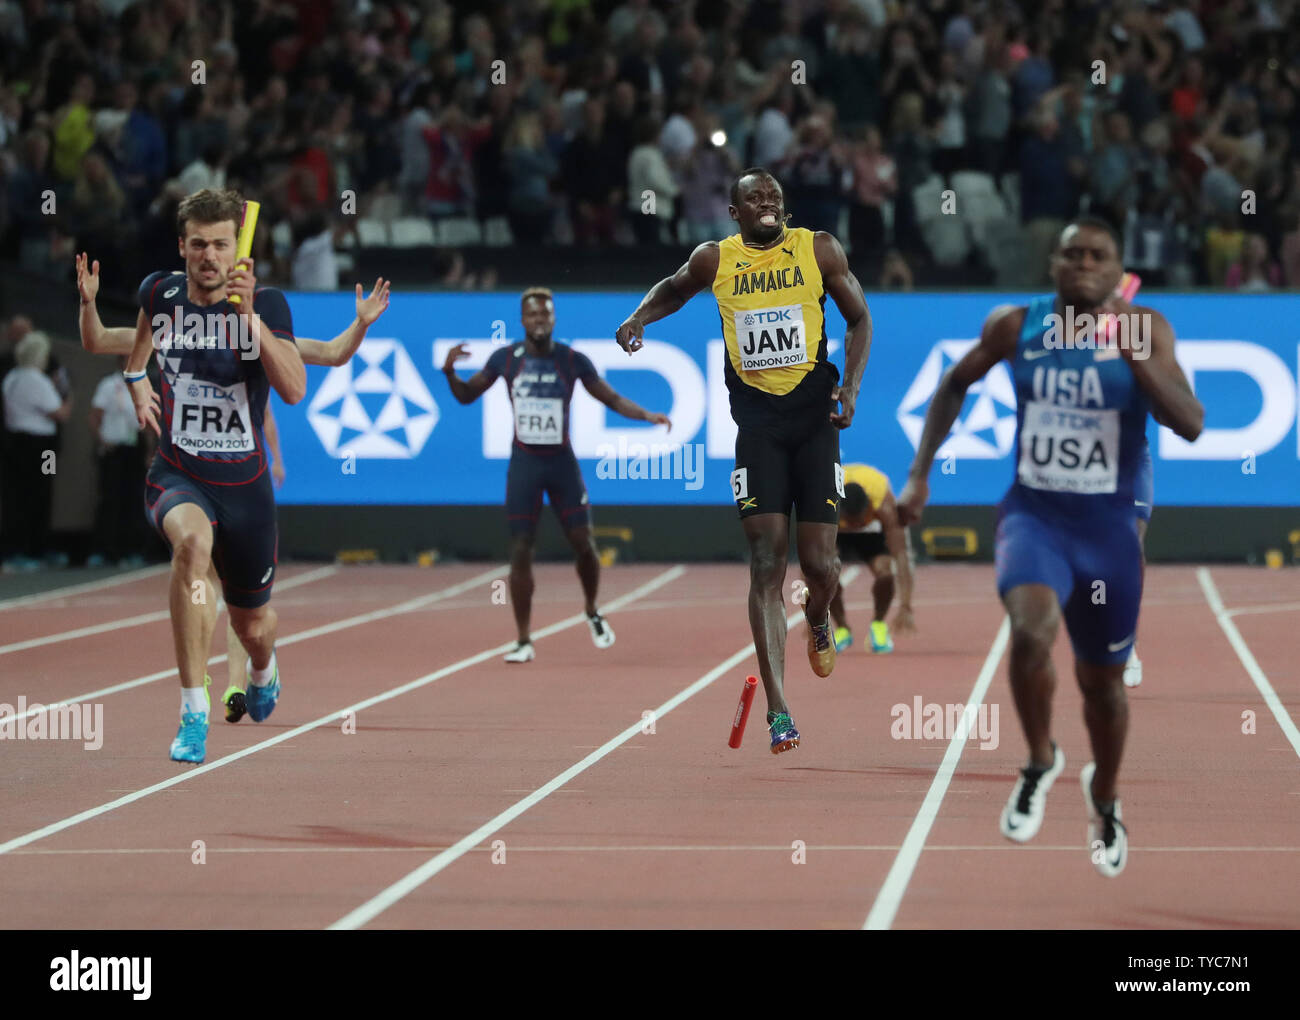 Jamaikaner Usain Bolt schreit in Schmerzen während der Herren 4x100-Meter-Staffel bei der IAAF Leichtathletik WM 2017 im Olympischen Stadion, London Am 12. August 2017. Dies war Usain Bolt letztes Rennen vor der Pensionierung. Foto von Hugo Philpott/UPI Stockfoto